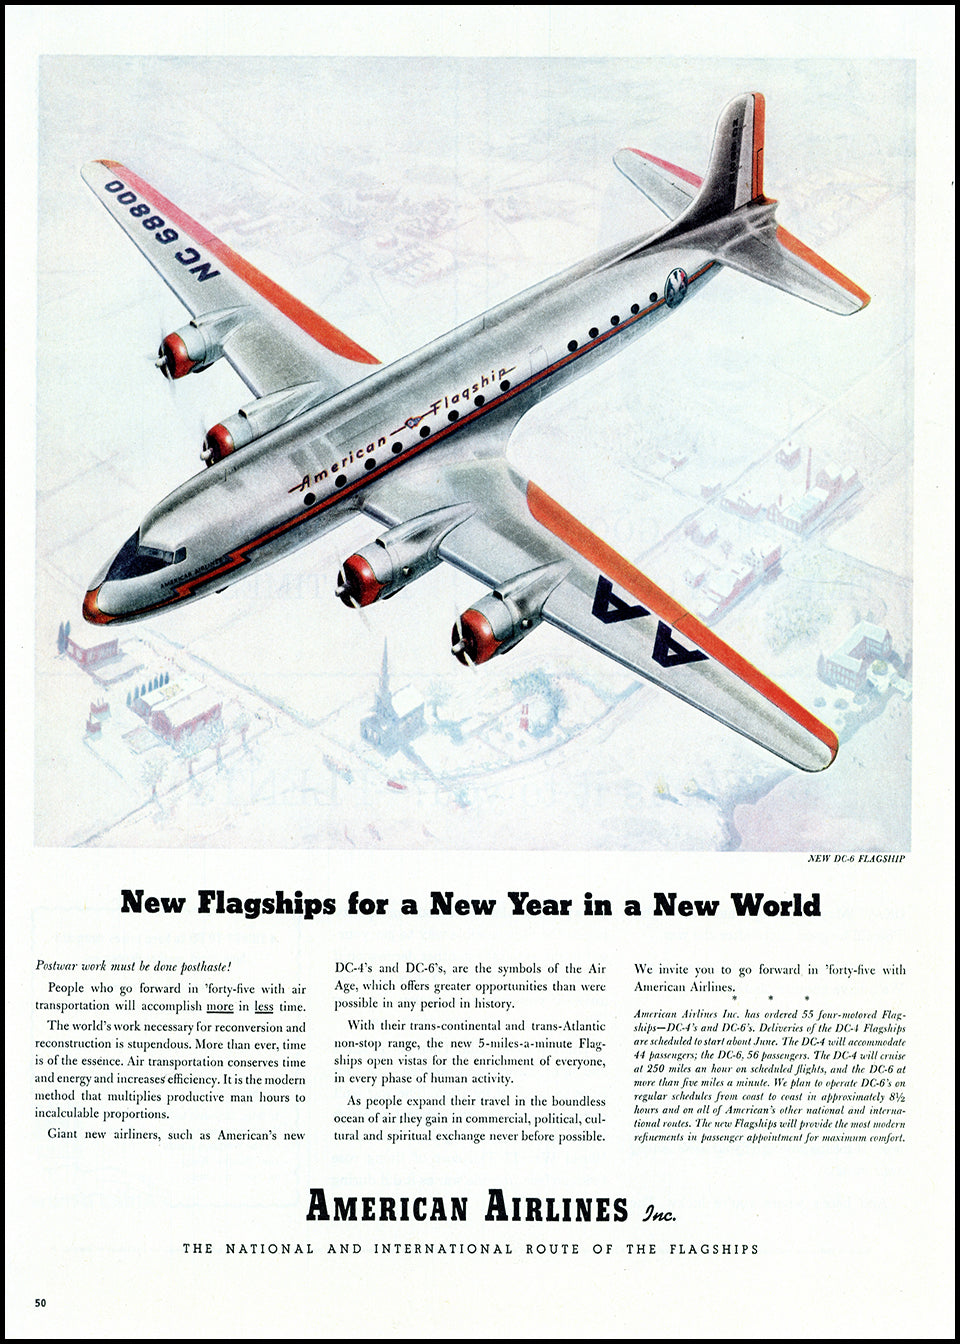 Original & Authentic Vintage Aviation Ads at Adirondack Retro